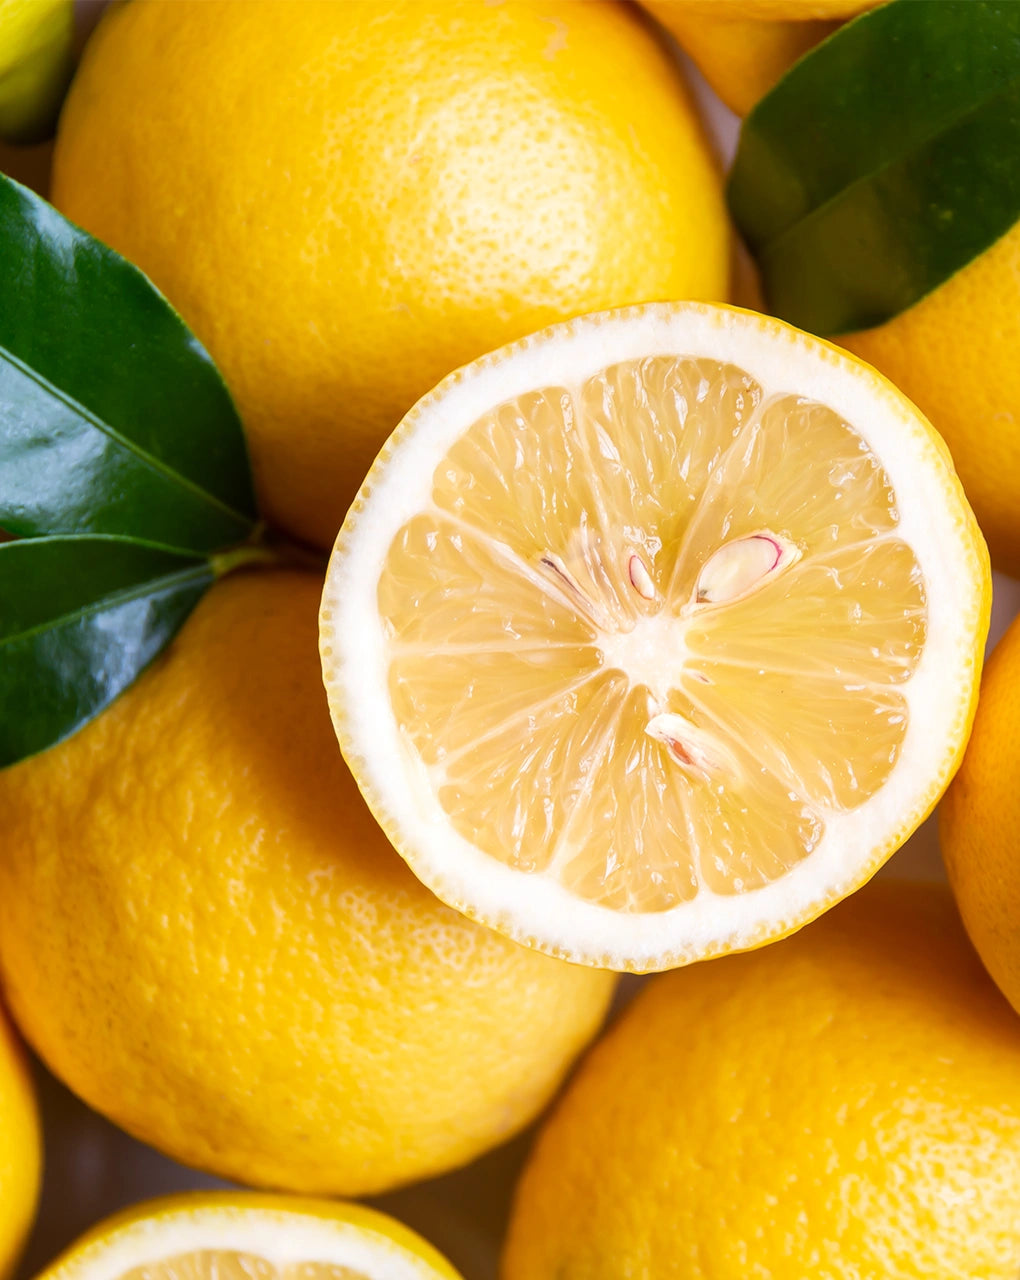 Lemons for bitter lemon